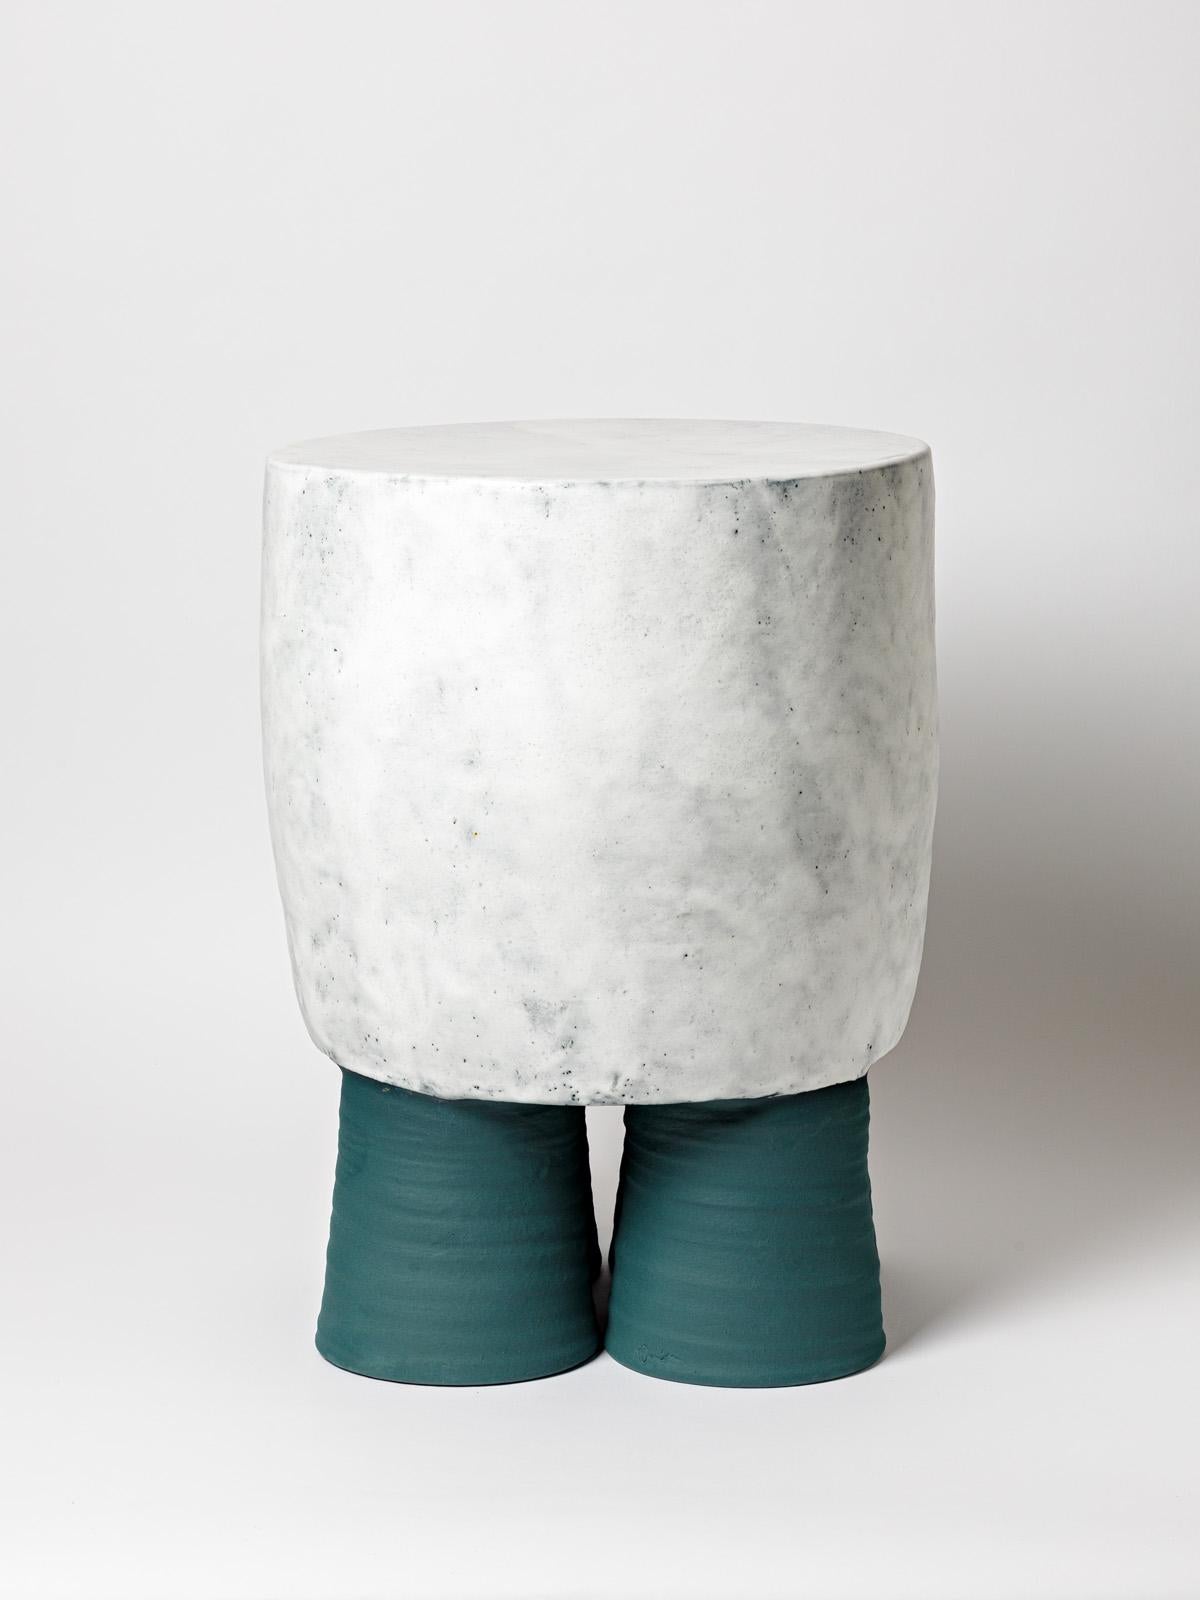 Ein Hocker oder Tisch aus Keramik mit Glasurdekoration von Mia Jensen.
Einzigartiges Stück.
Unter dem Sockel signiert.
Ca. 2022.